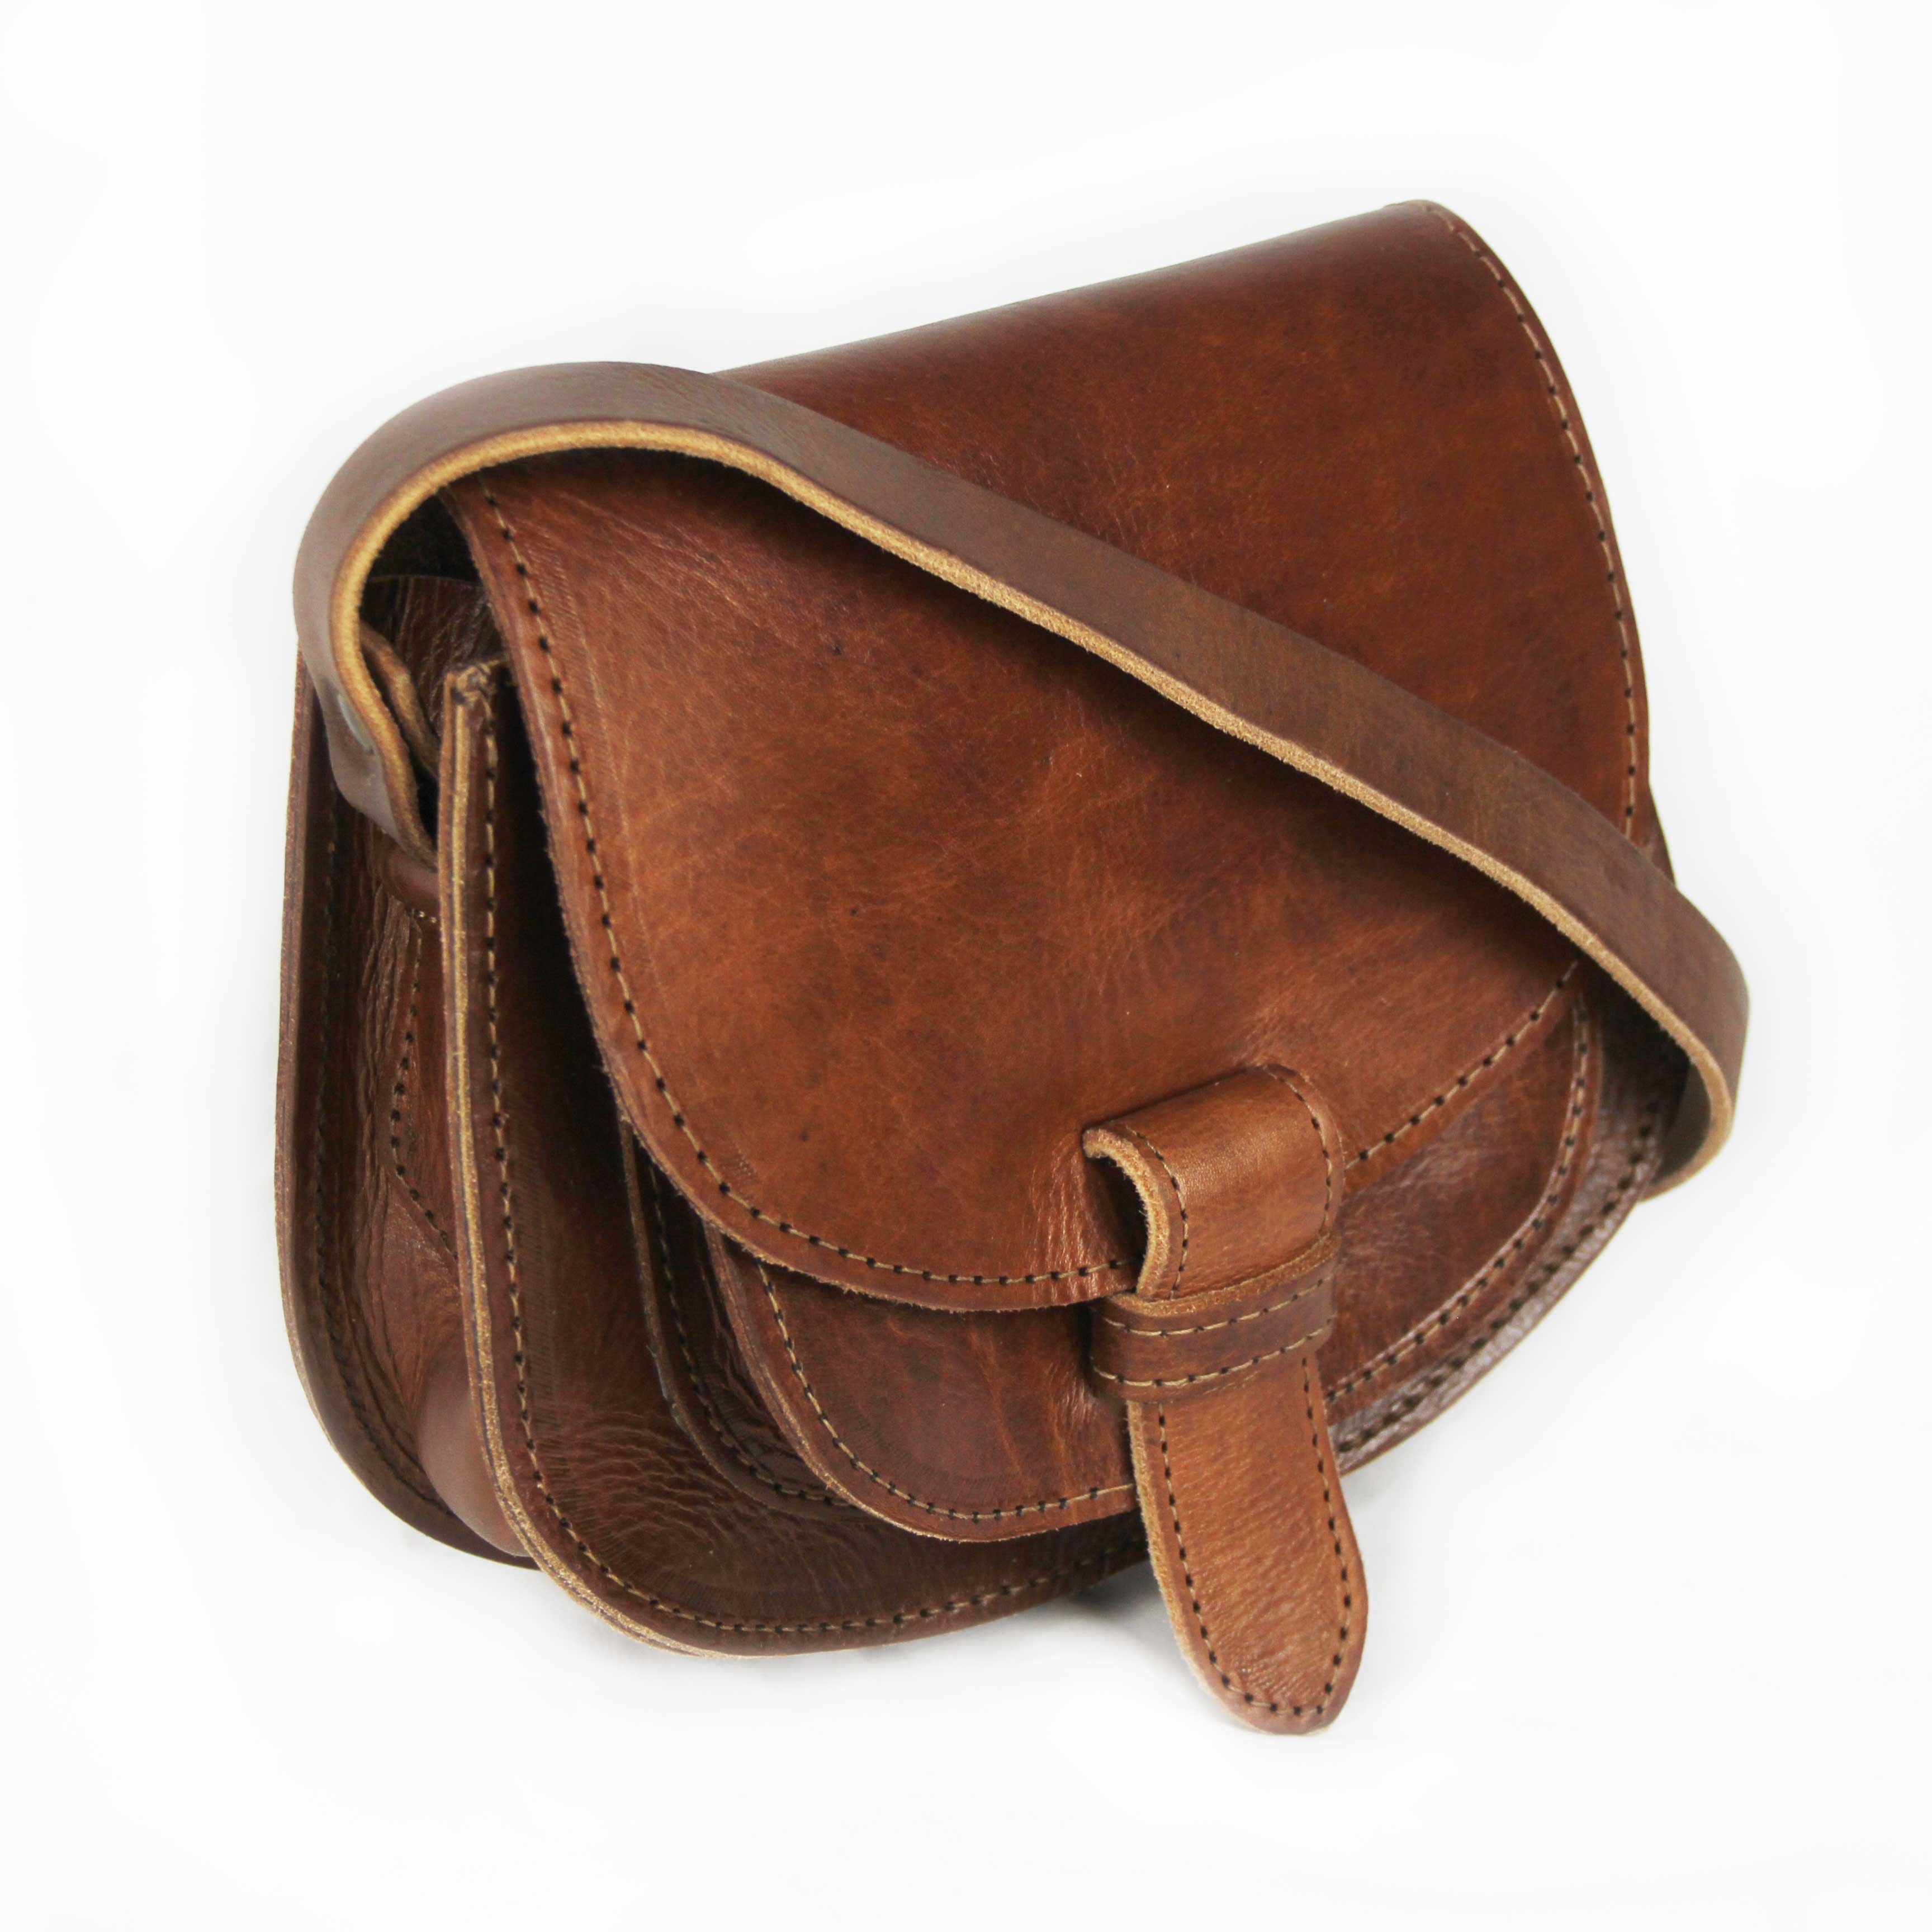 Maya Light Brown Leather Saddle Bag